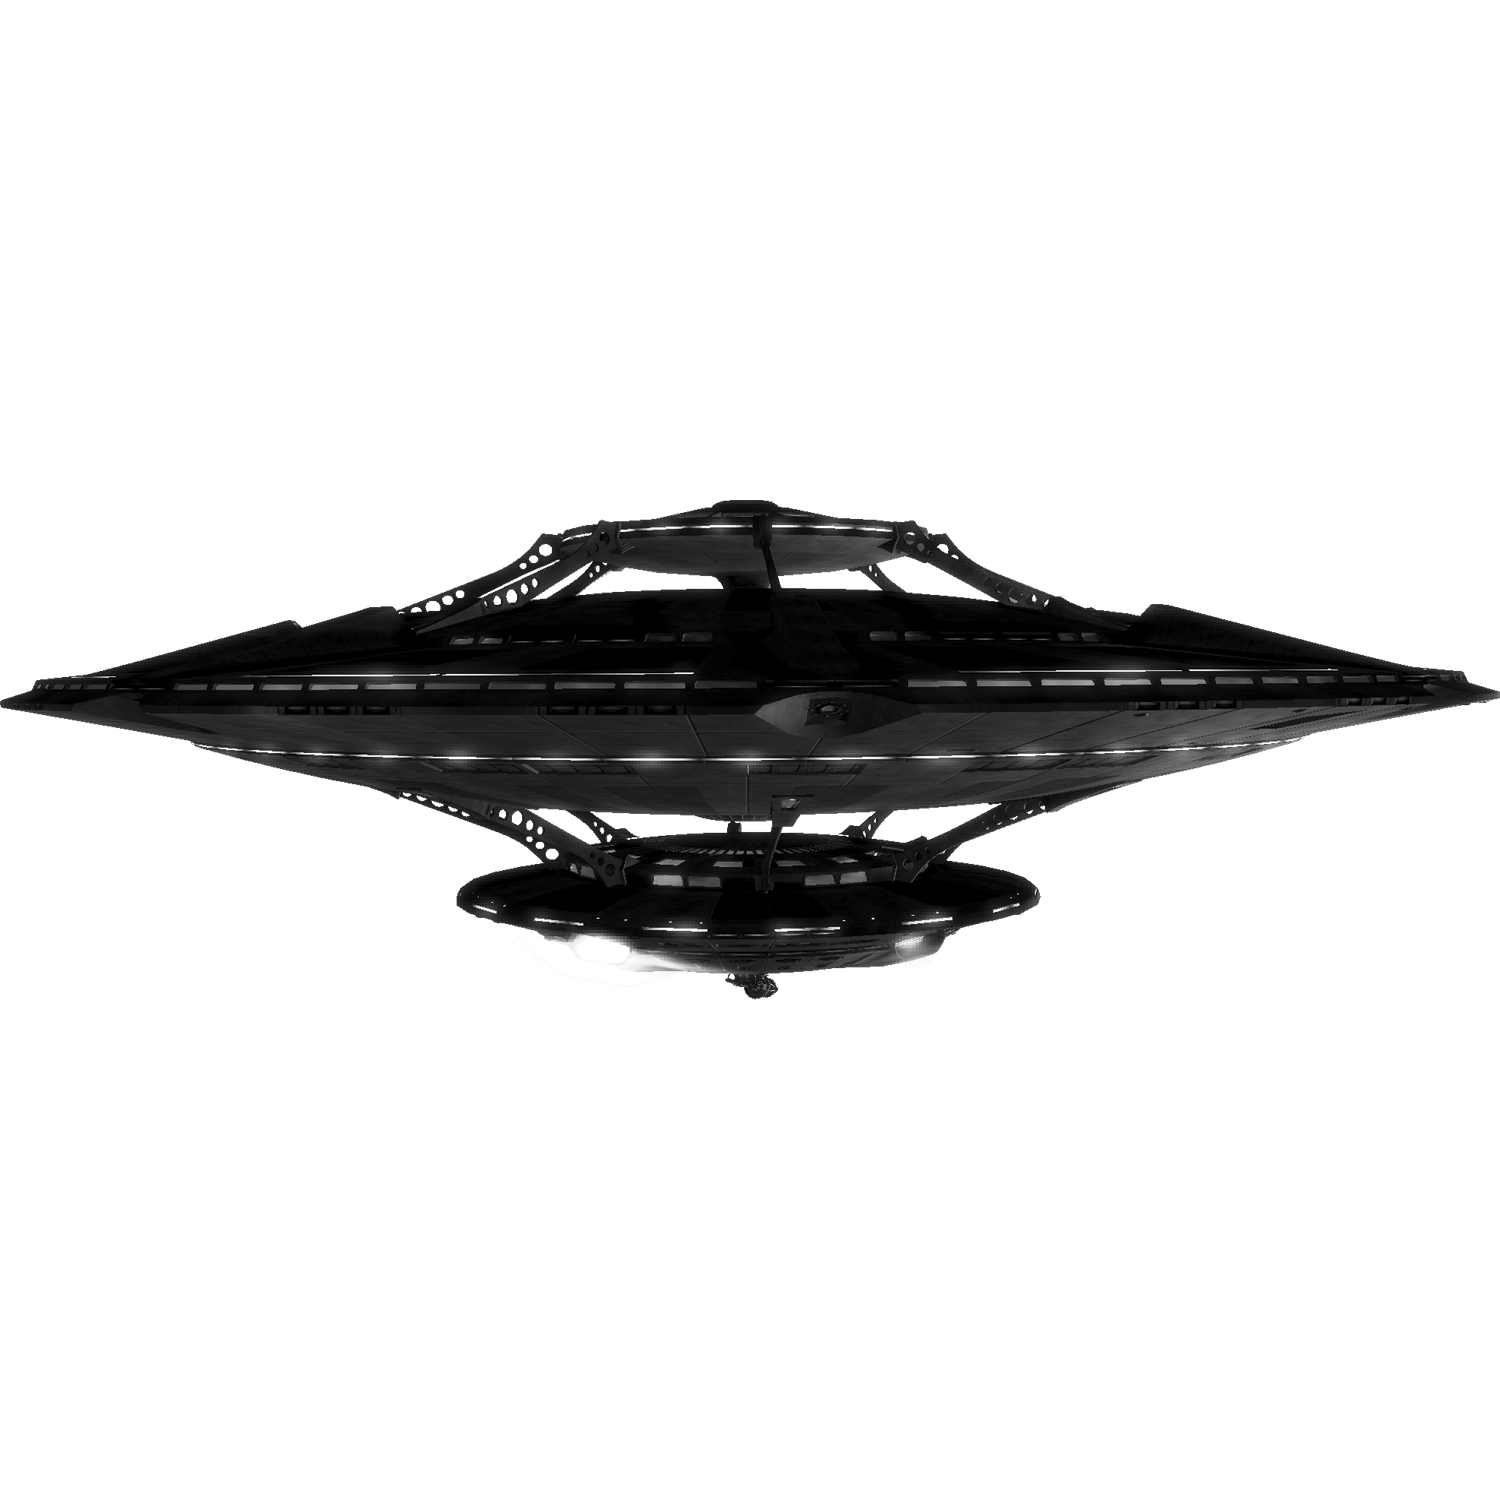 Alien Ship  Transparent Photo